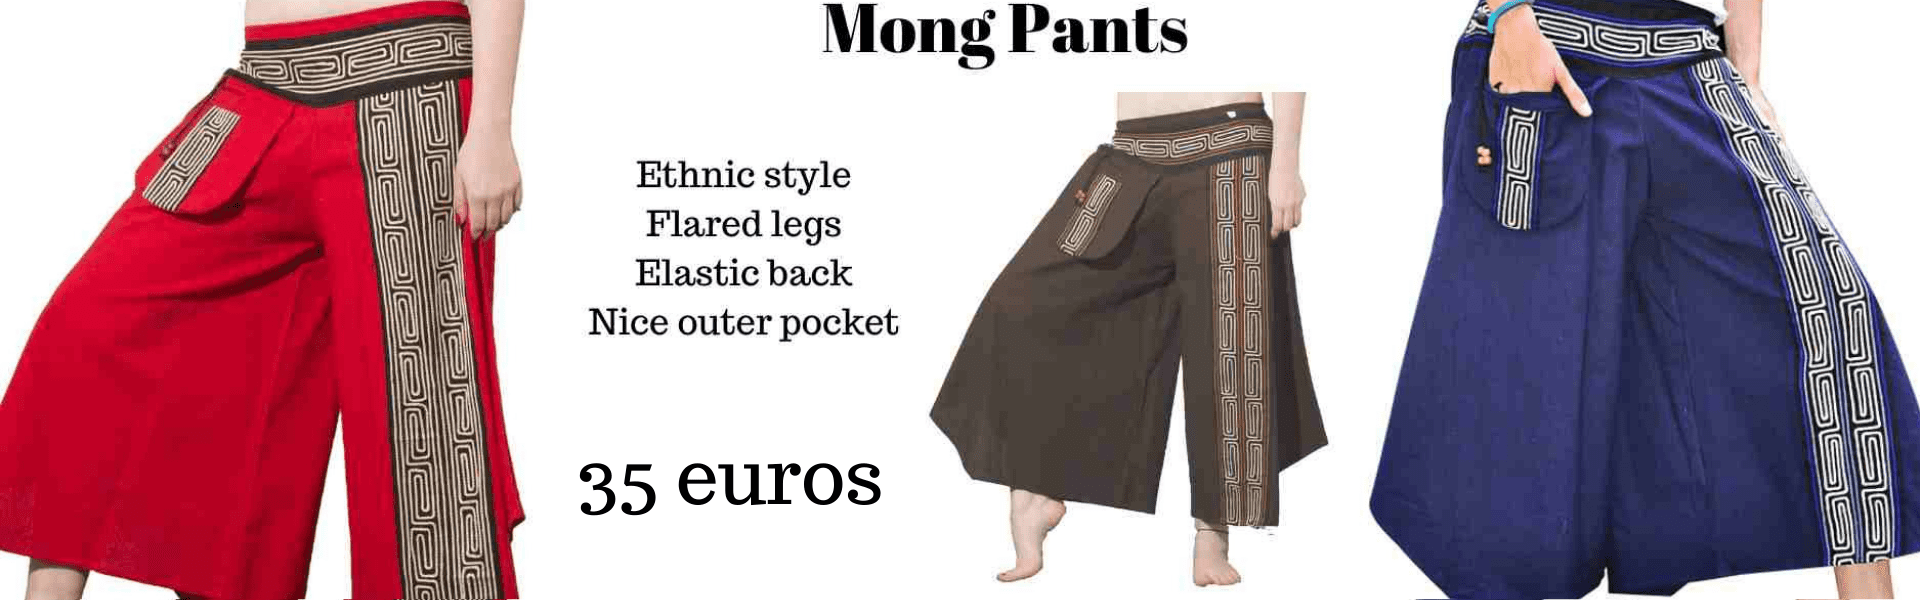 Mong Pants Ethnic Style